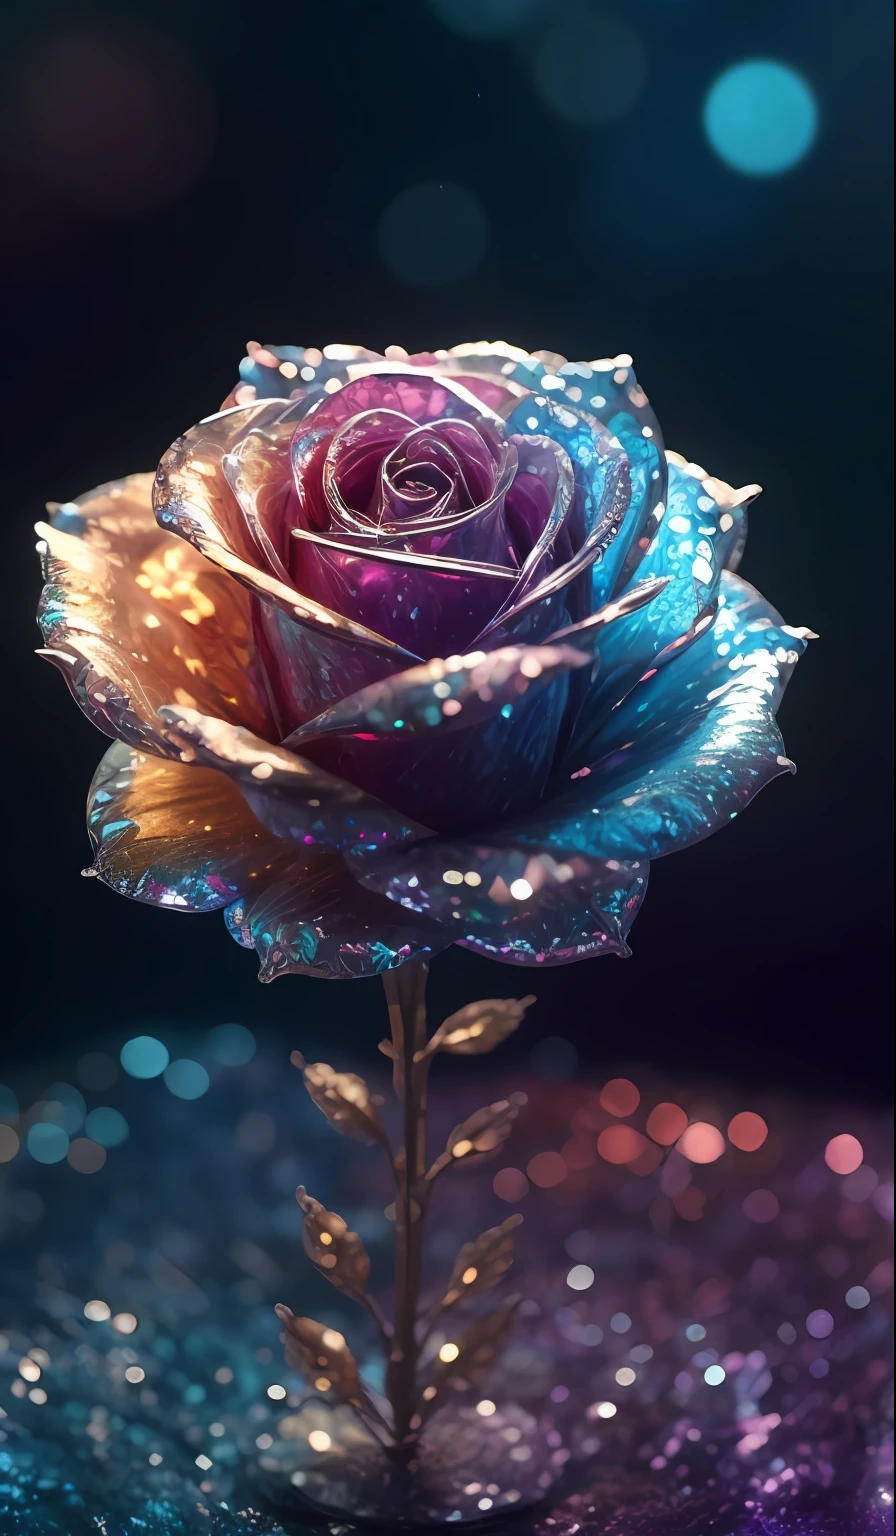 水晶玫瑰， 奇特的, 星際的, 清潔, 關於, 關於, 華麗的, 豐富多彩的, 很棒的照片, 戏剧灯光, 照相寫實主義, 超詳細, 4k, 景深, 高解析度